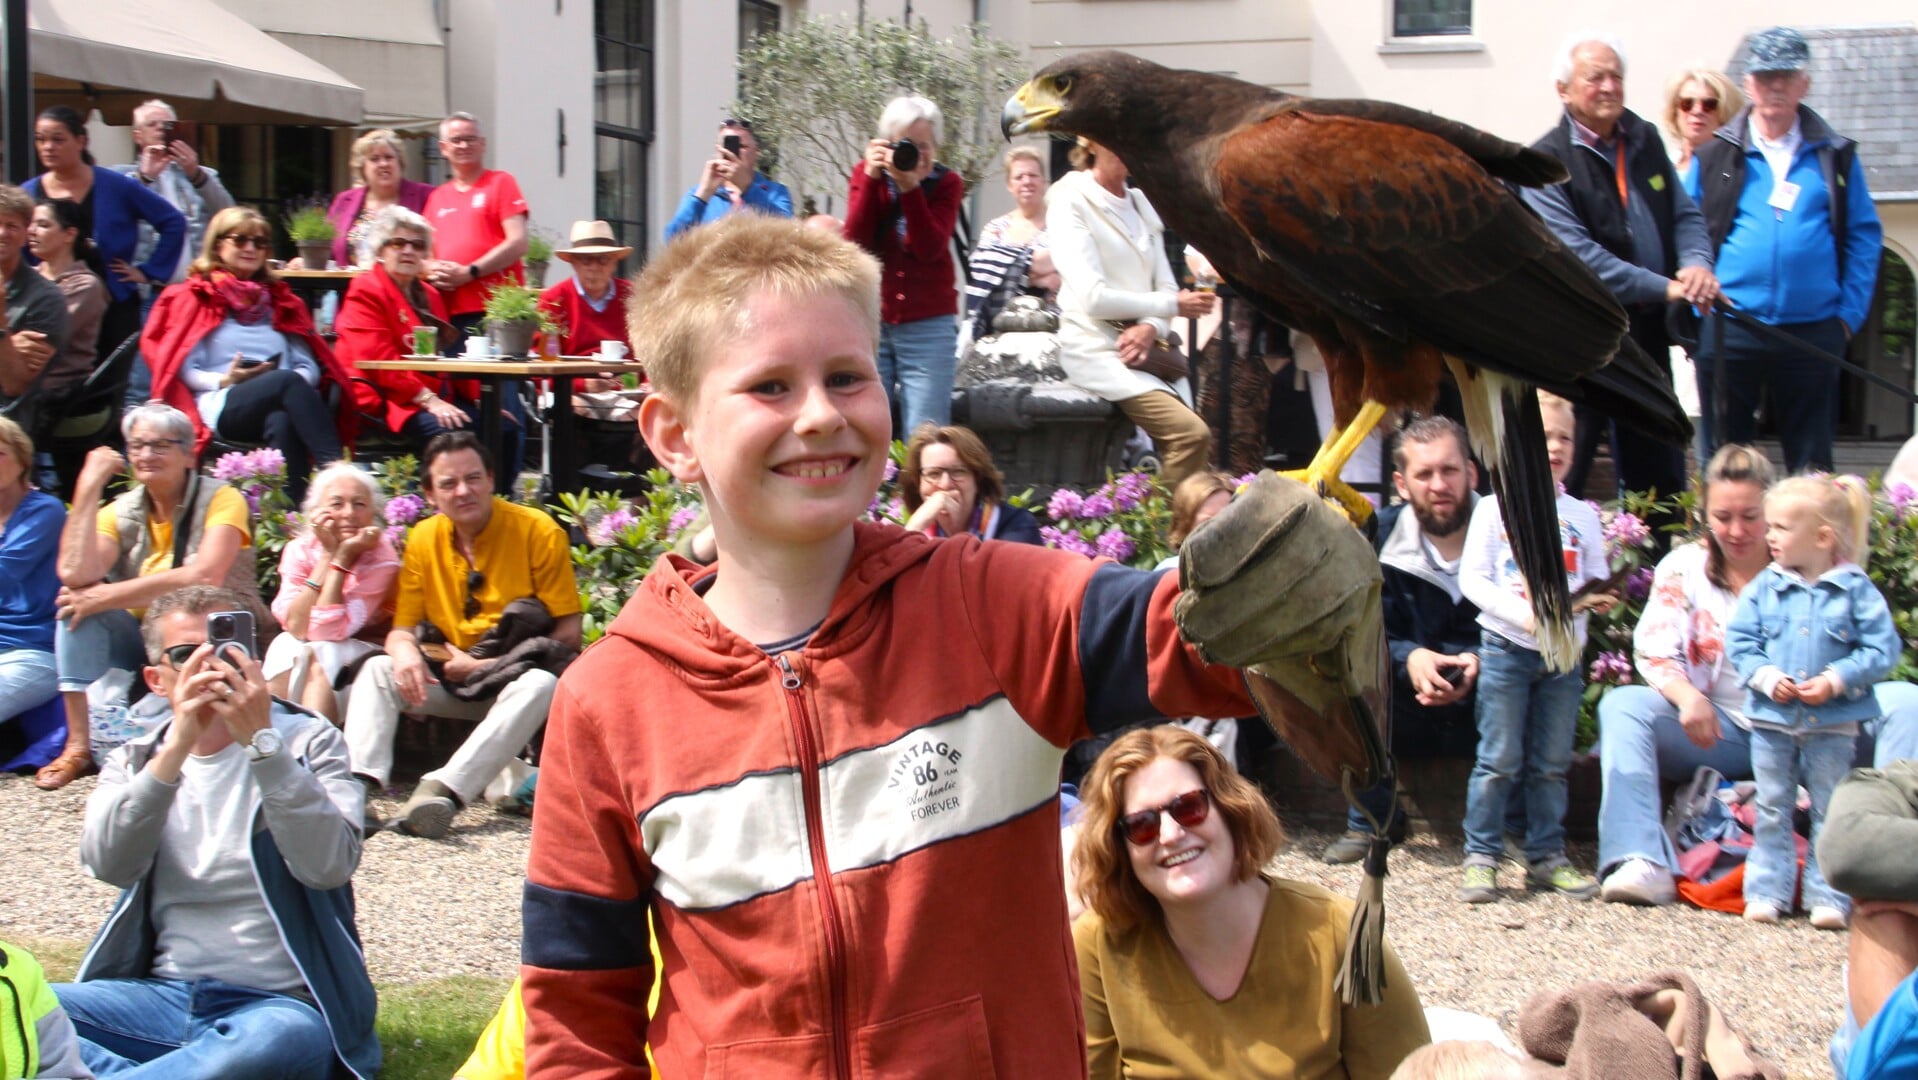 De jonge bezoekers worden betrokken bij de show met de roofdieren.